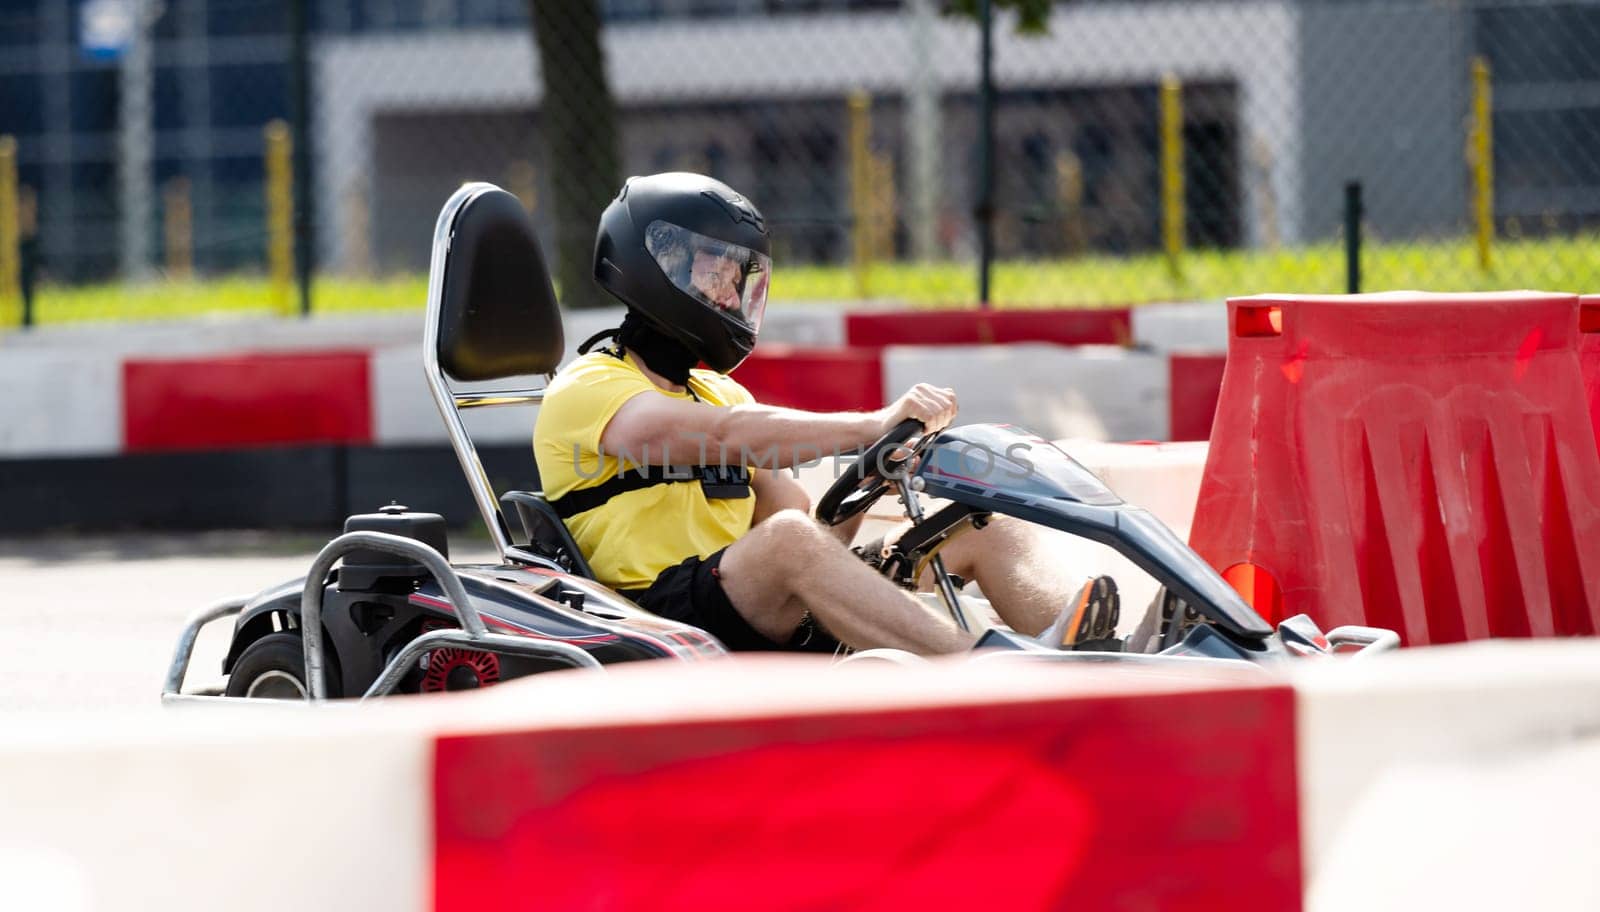 Man In Protective Helmet Driving Go-Kart By Racing Track by GekaSkr